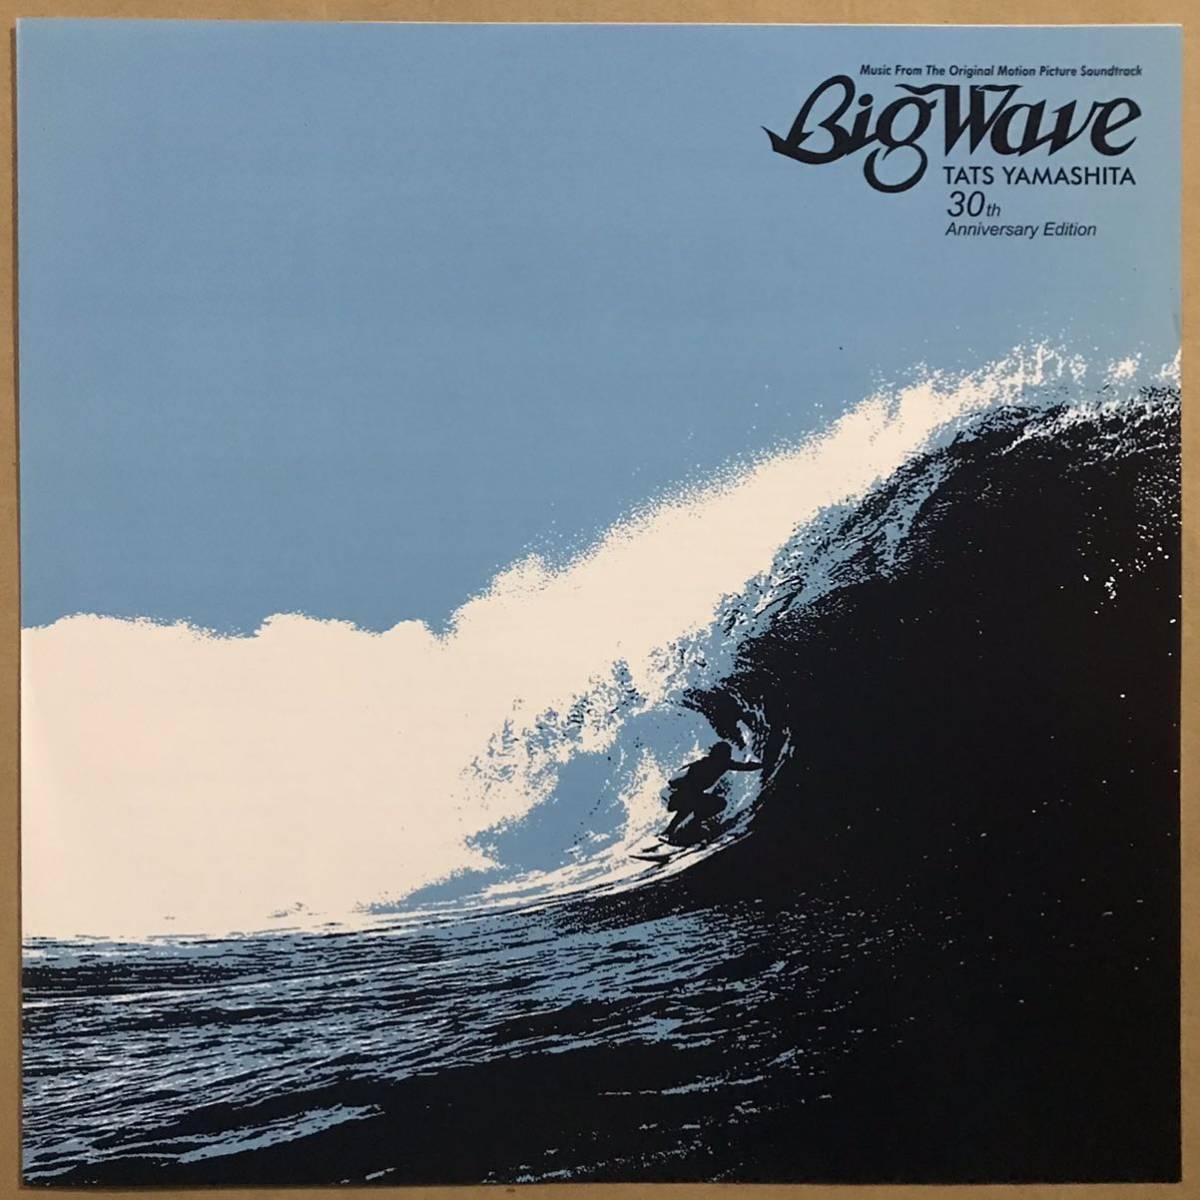 貴重 30周年記念 180g重量盤 山下達郎 BIG WAVE 2枚組LP(山下達郎